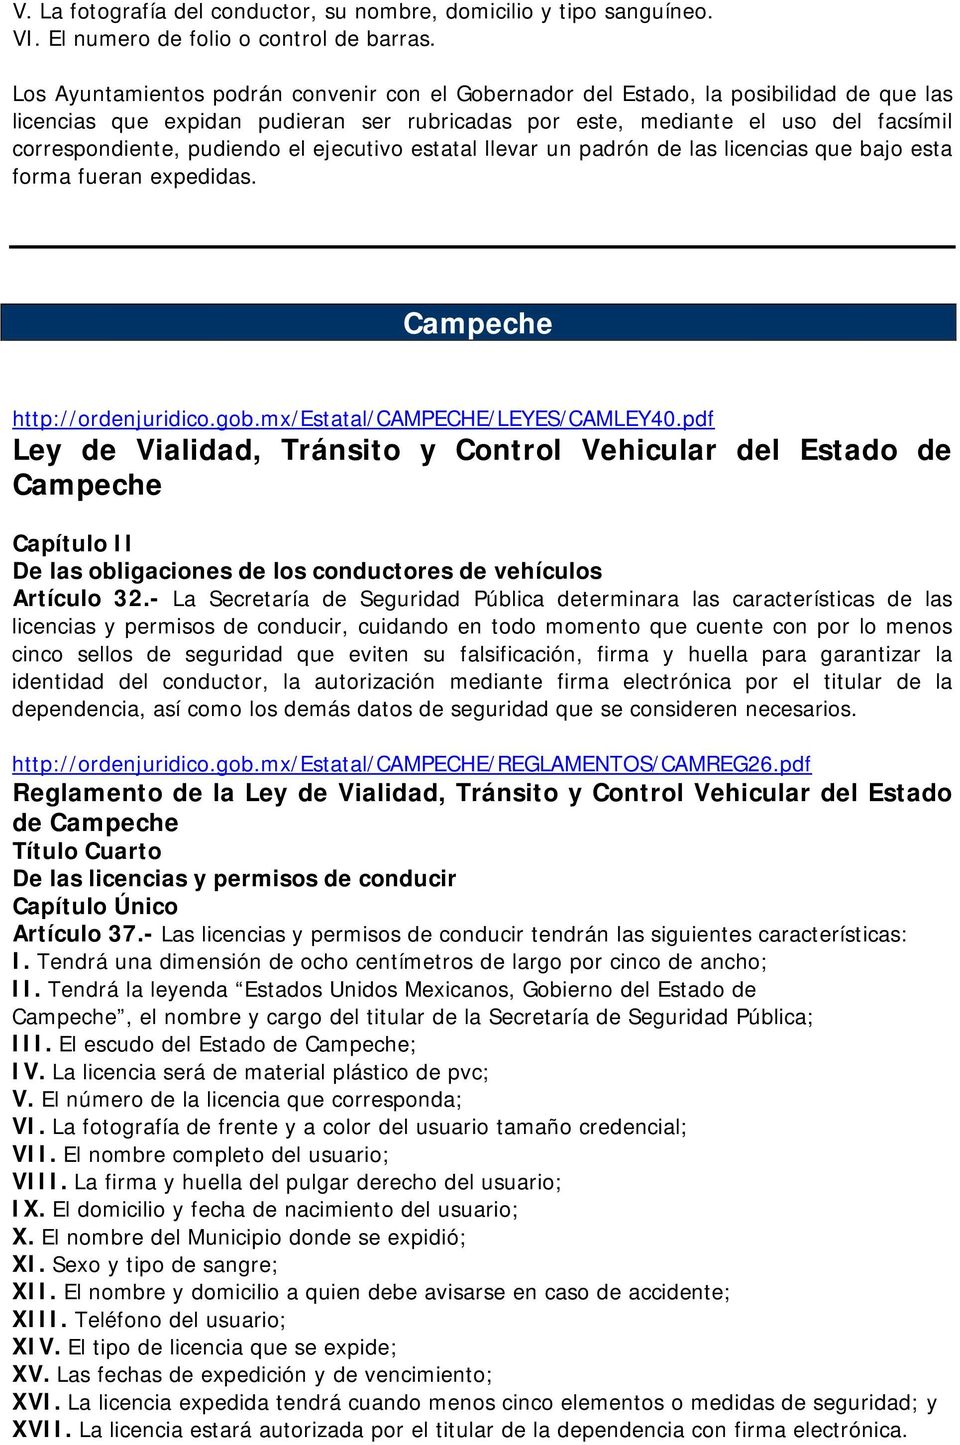 pudiendo el ejecutivo estatal llevar un padrón de las licencias que bajo esta forma fueran expedidas. Campeche http://ordenjuridico.gob.mx/estatal/campeche/leyes/camley40.